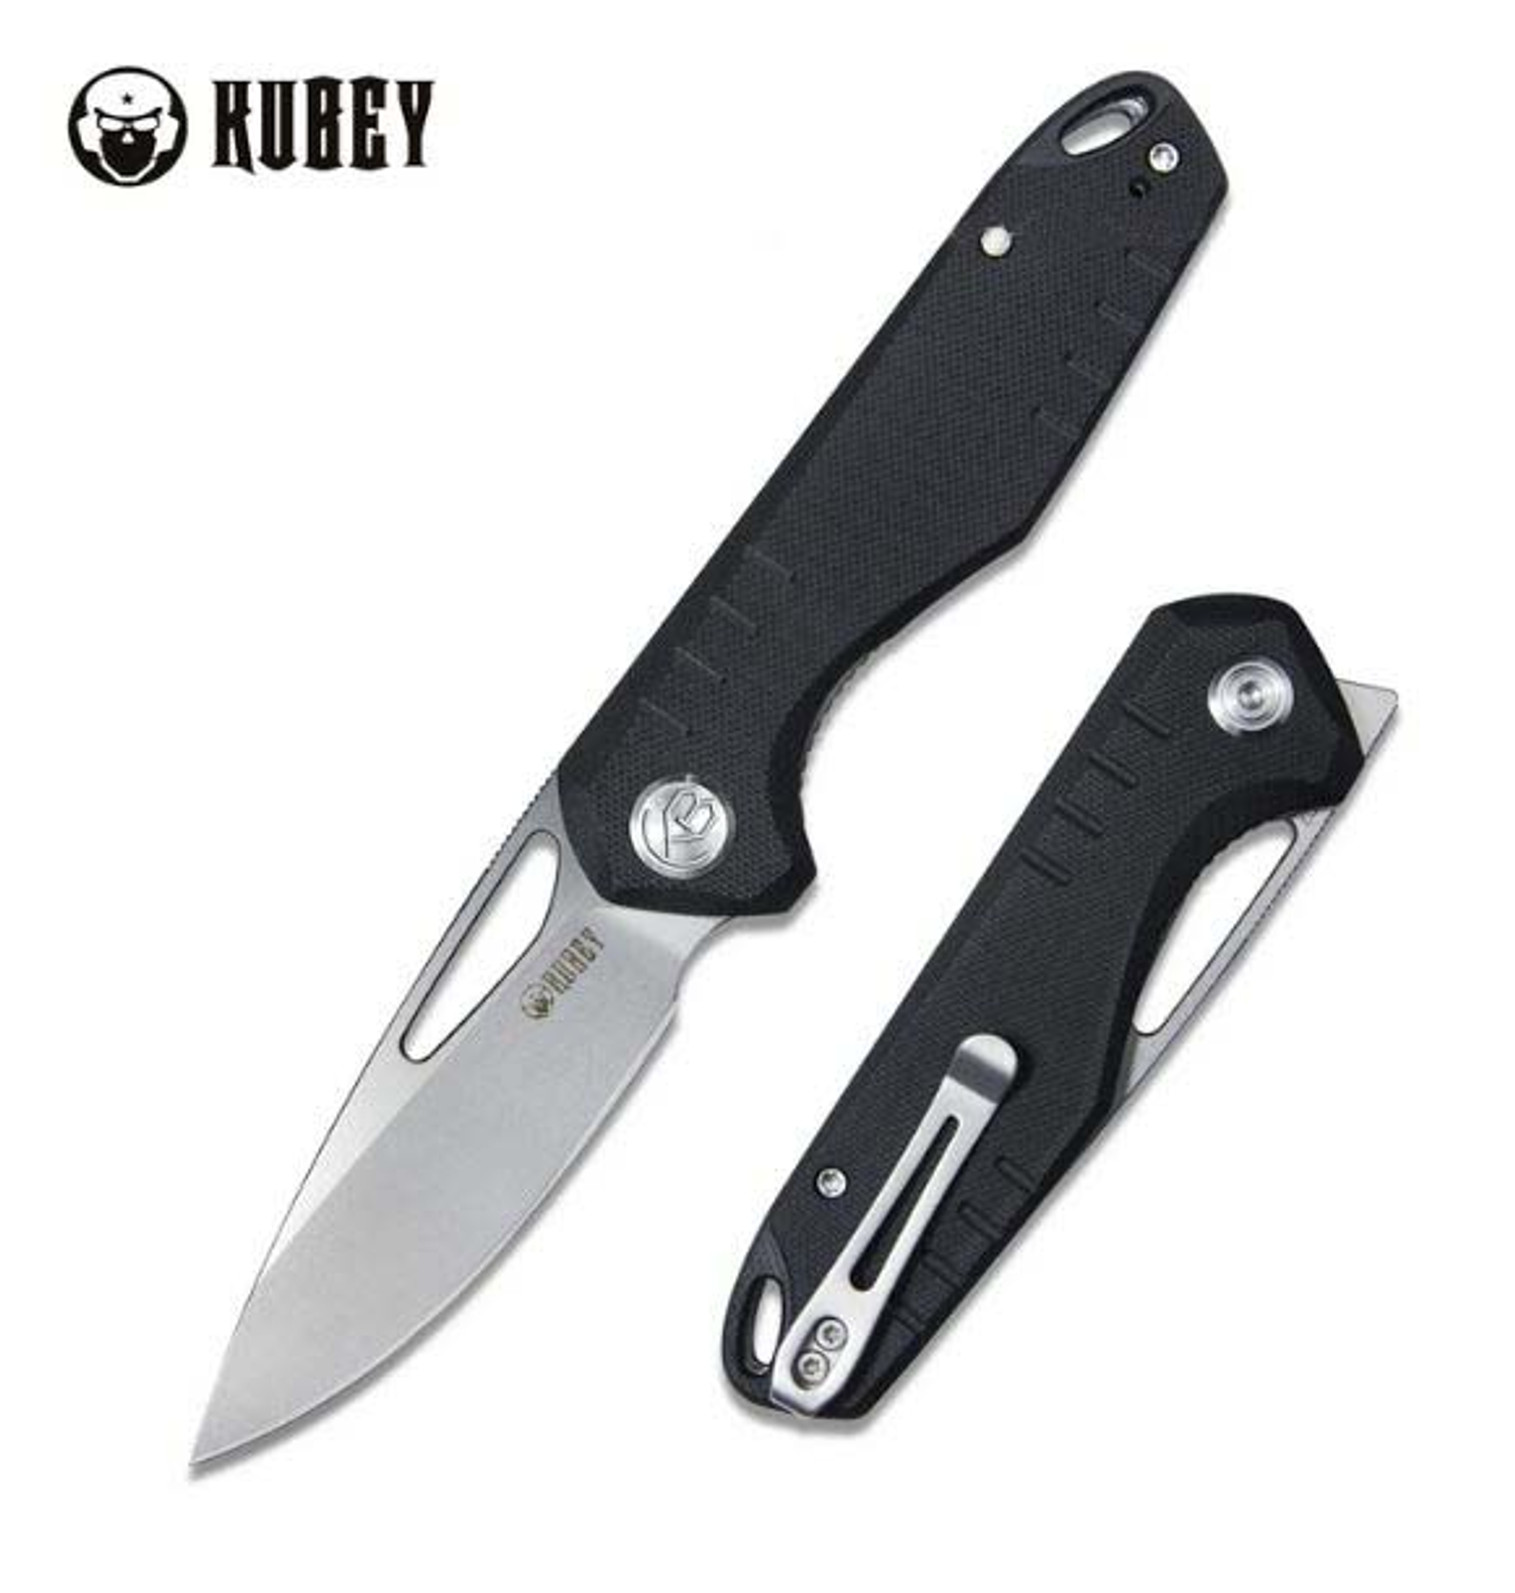 Kubey Flipper Folding Knife, D2 Satin, G10 Black, KU324A